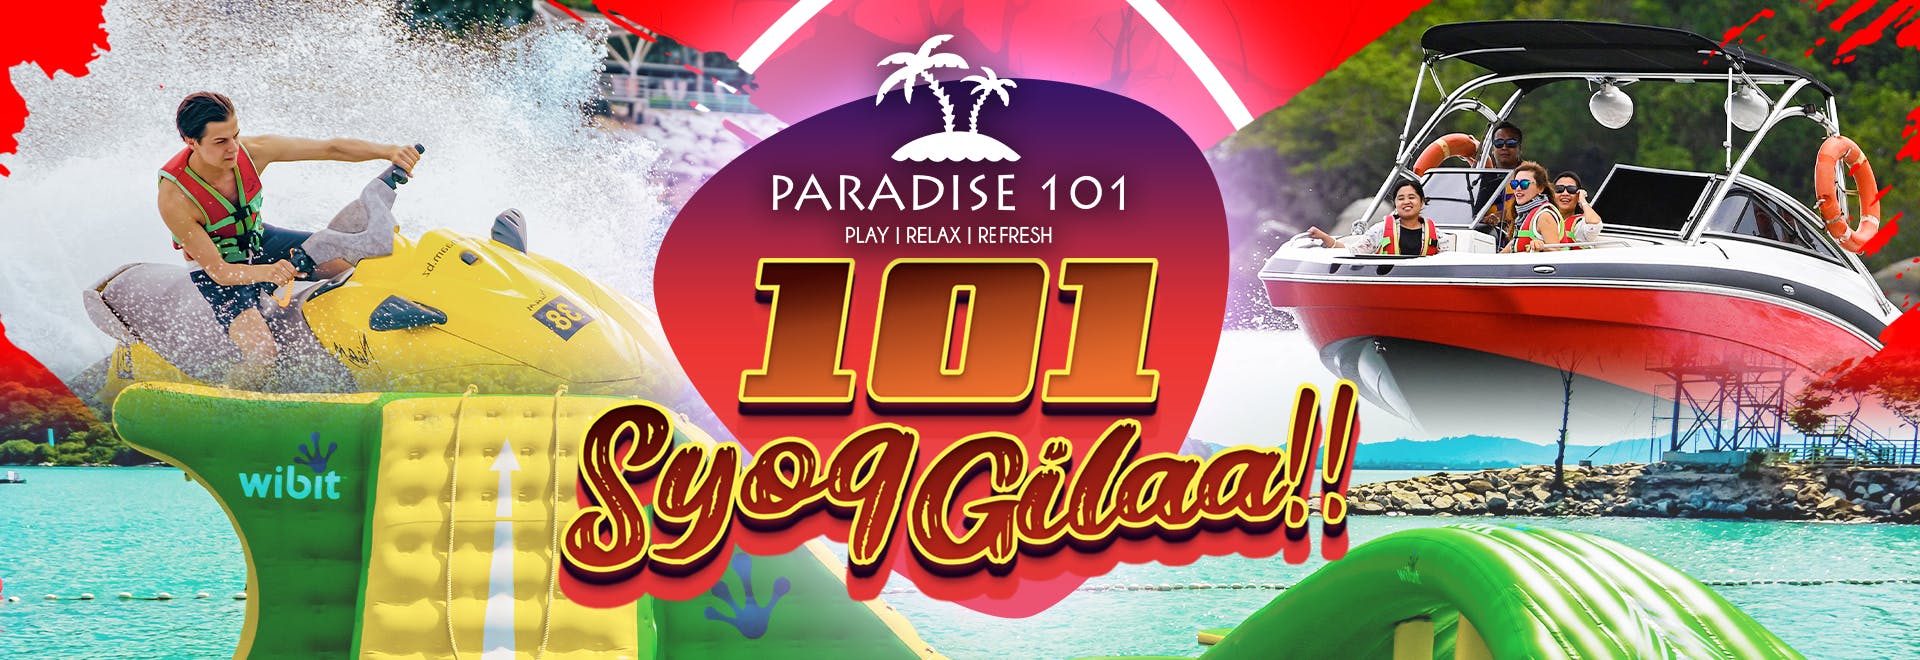 Paradise 101 - Langkawi-Syog Gilaa - entrance ticket